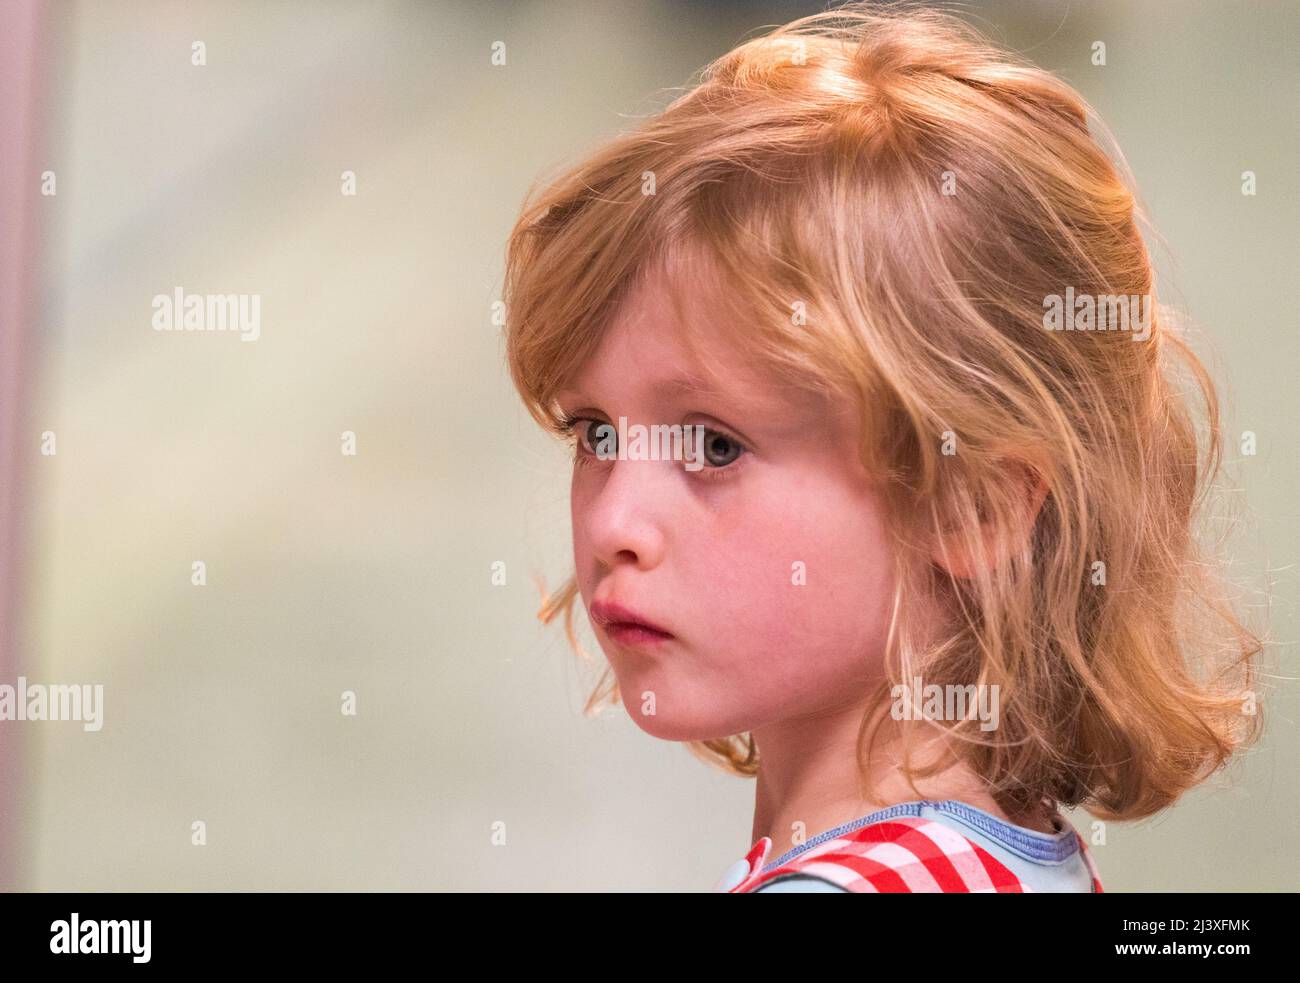 Ein Nahaufnahme-Porträt eines kleinen Mädchens mit blondem Haar und blauen Augen in einem Dreiviertel-Winkel, das nachdenklich aussieht. Stockfoto